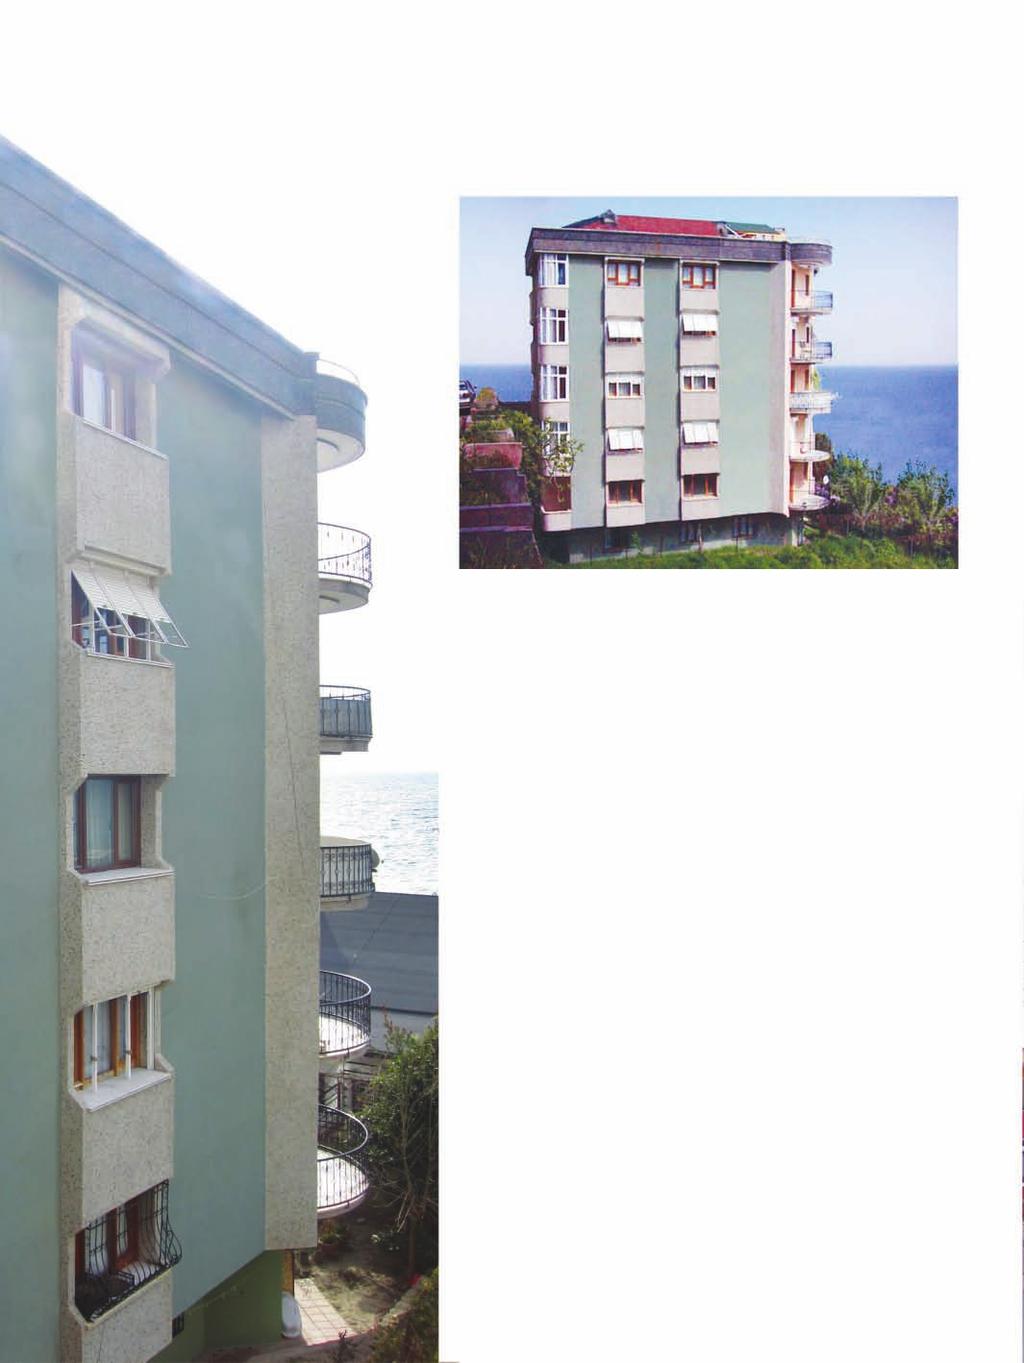 Demirci Aptartmanı Demirci Apartment Building Proje Açıklaması: Denizköşklerde deniz manzarasına karşı yapılan apartman 200 m 2 lik 6 dairen oluşmaktadır.